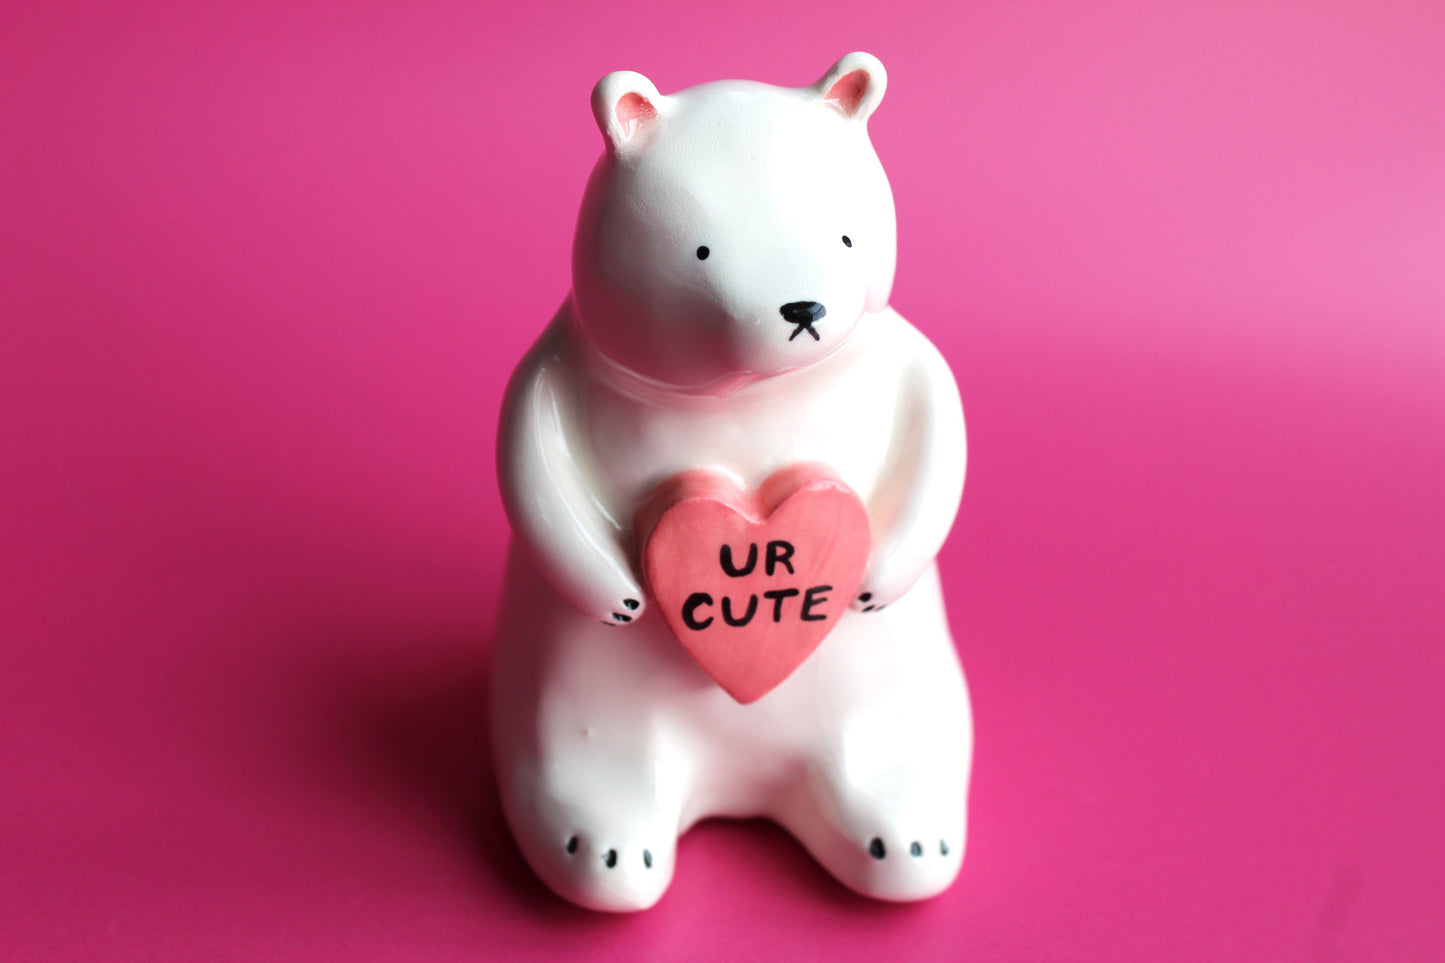 "Ur cute" bear